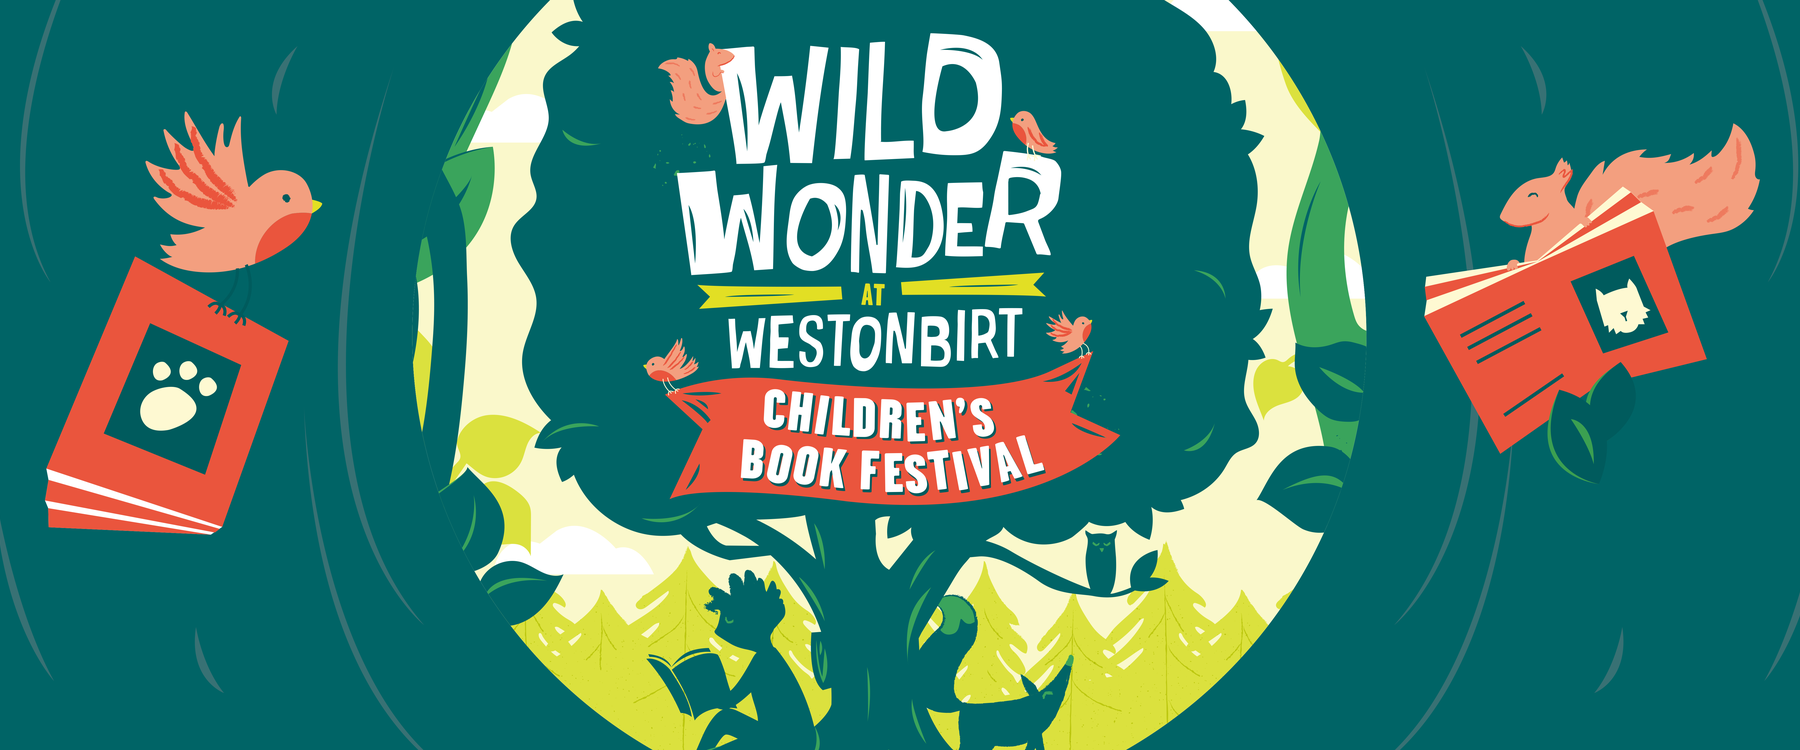 Wild Wonder at Westonbirt – Children’s book festival